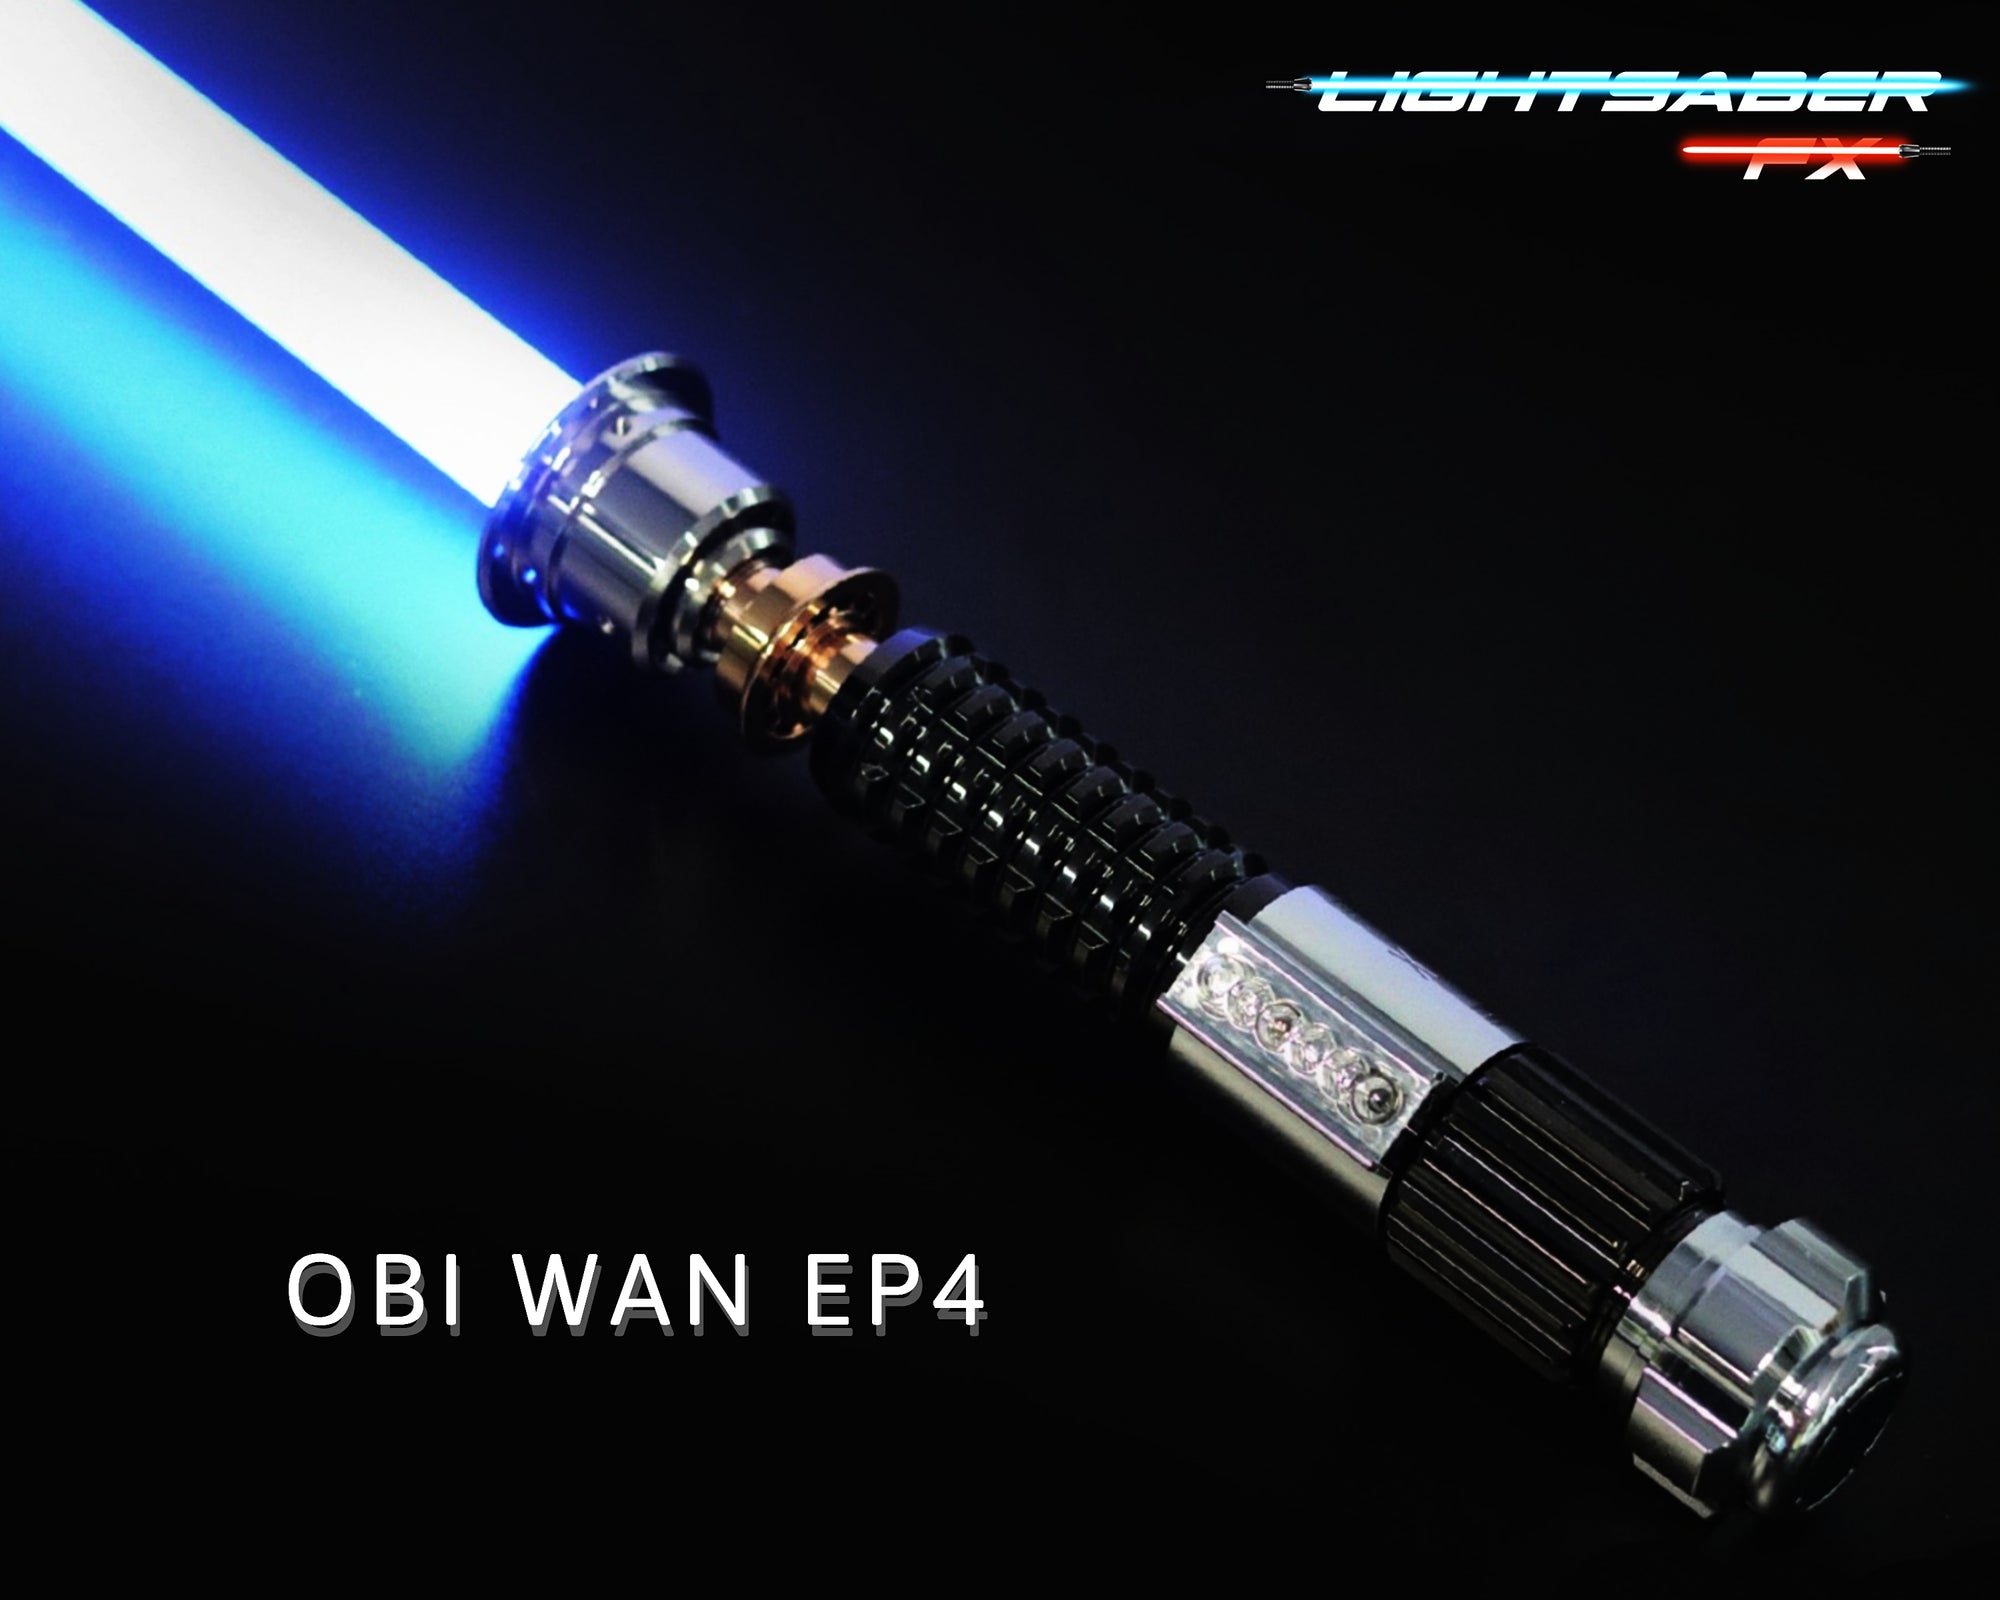 Obi Wan's EP.4